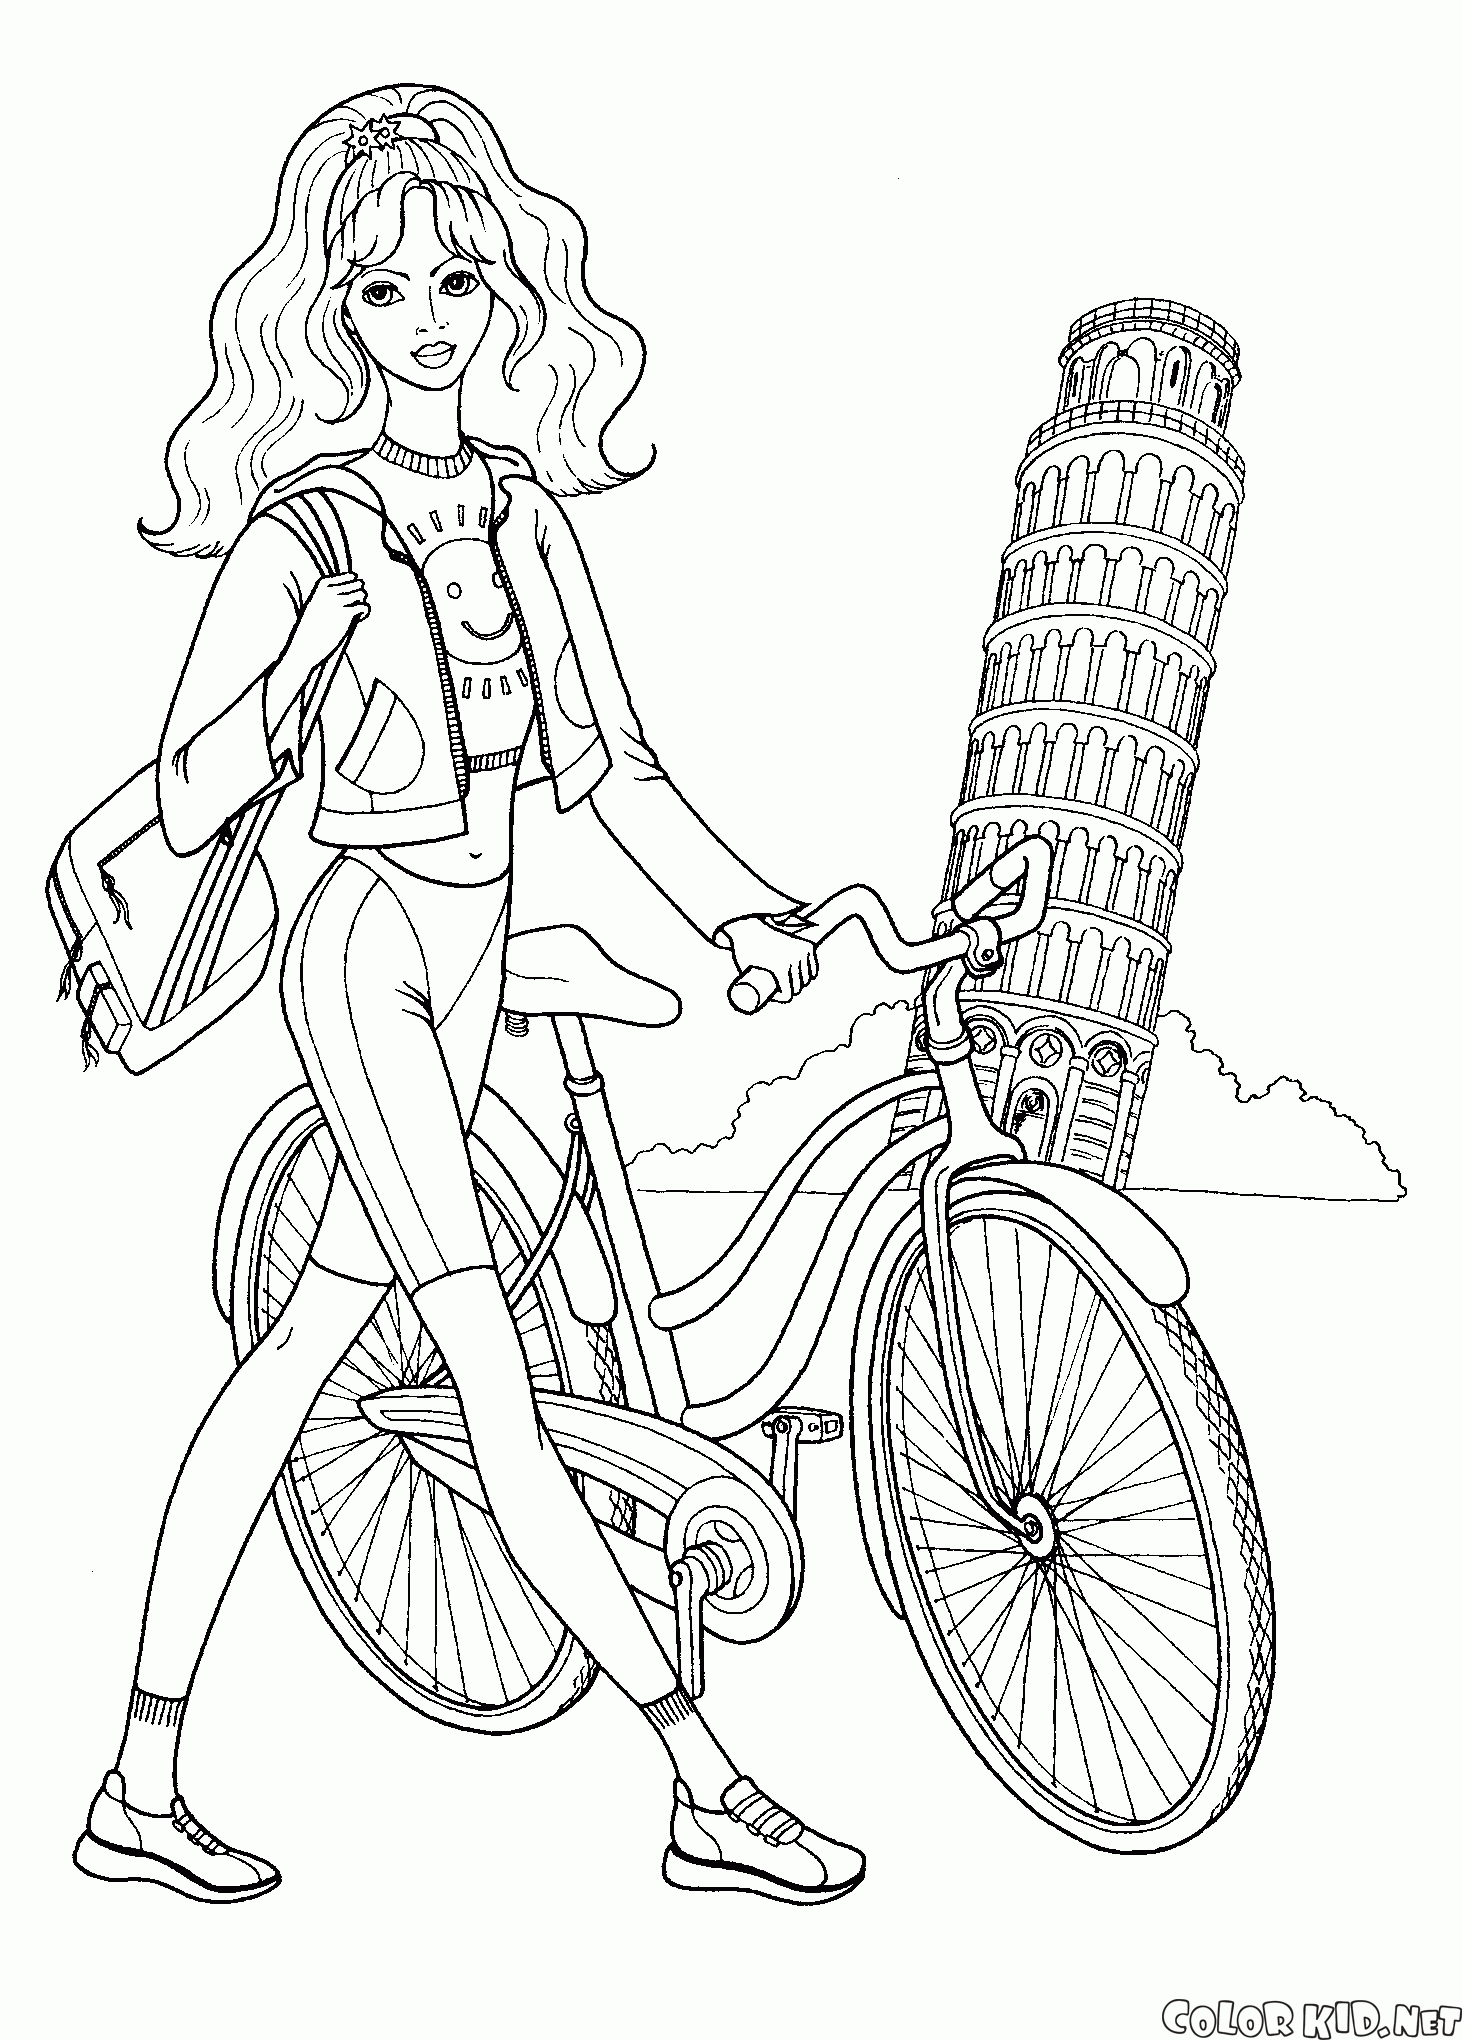 Menina com uma bicicleta